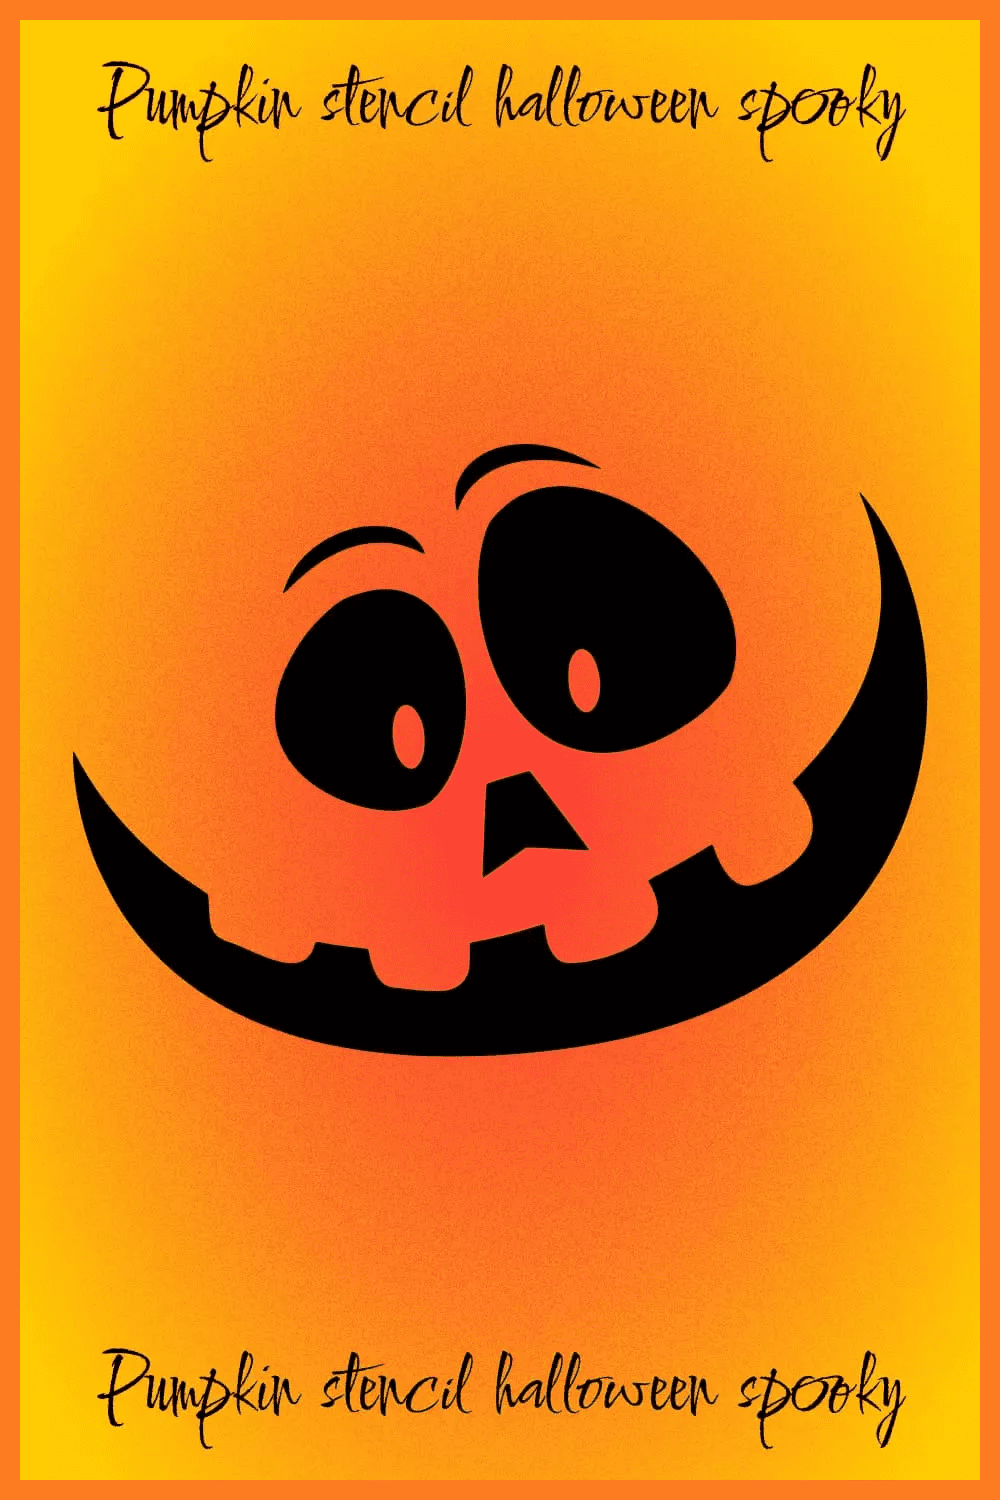 Pumpkin Stencil Halloween Spooky with orange background.